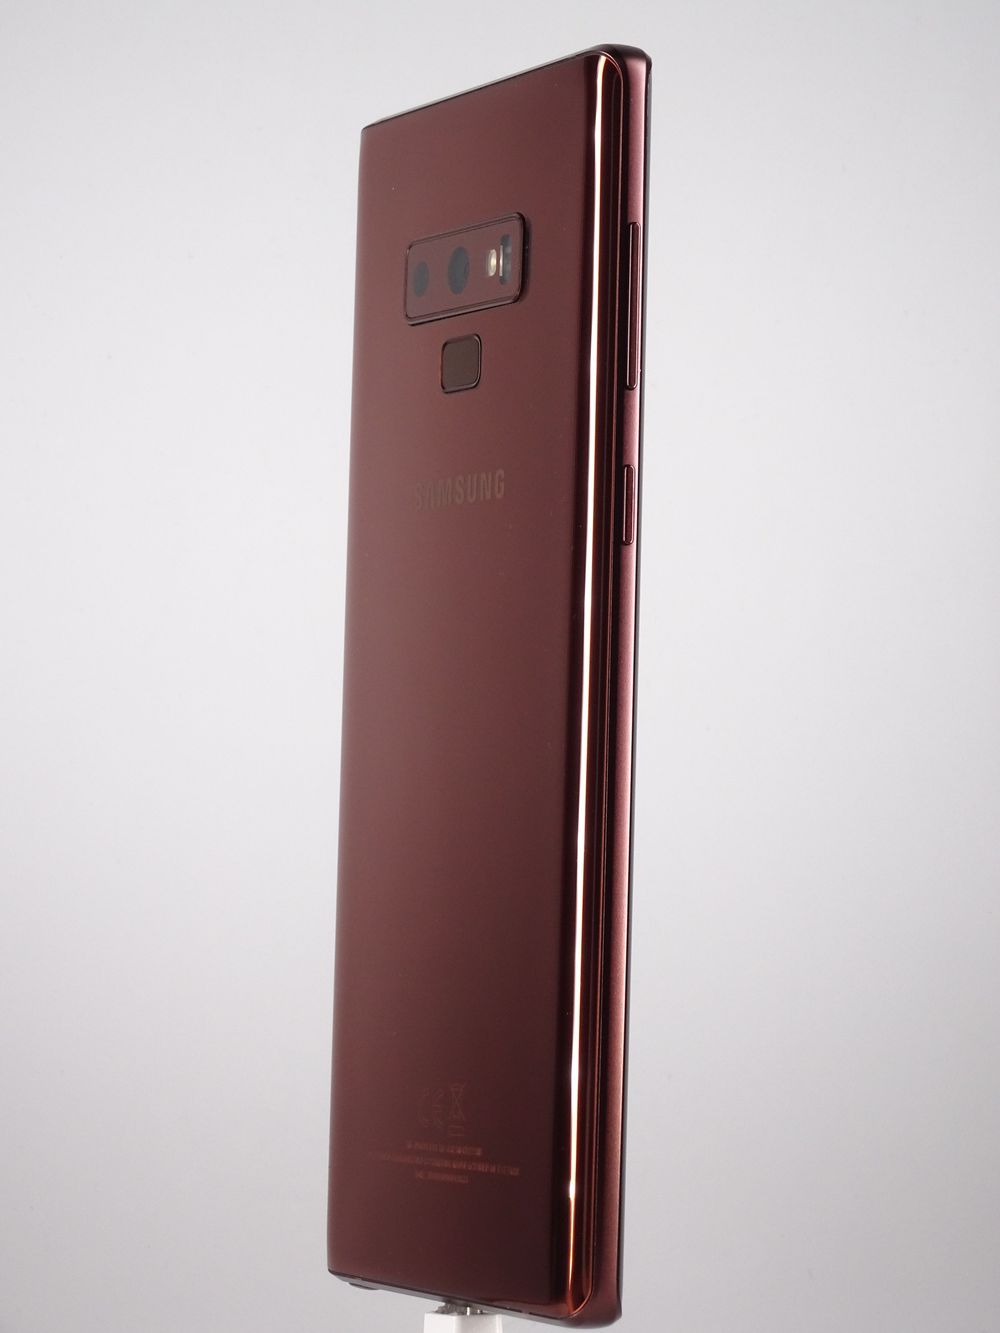 Мобилен телефон Samsung, Galaxy Note 9 Dual Sim, 128 GB, Metallic Copper,  Като нов